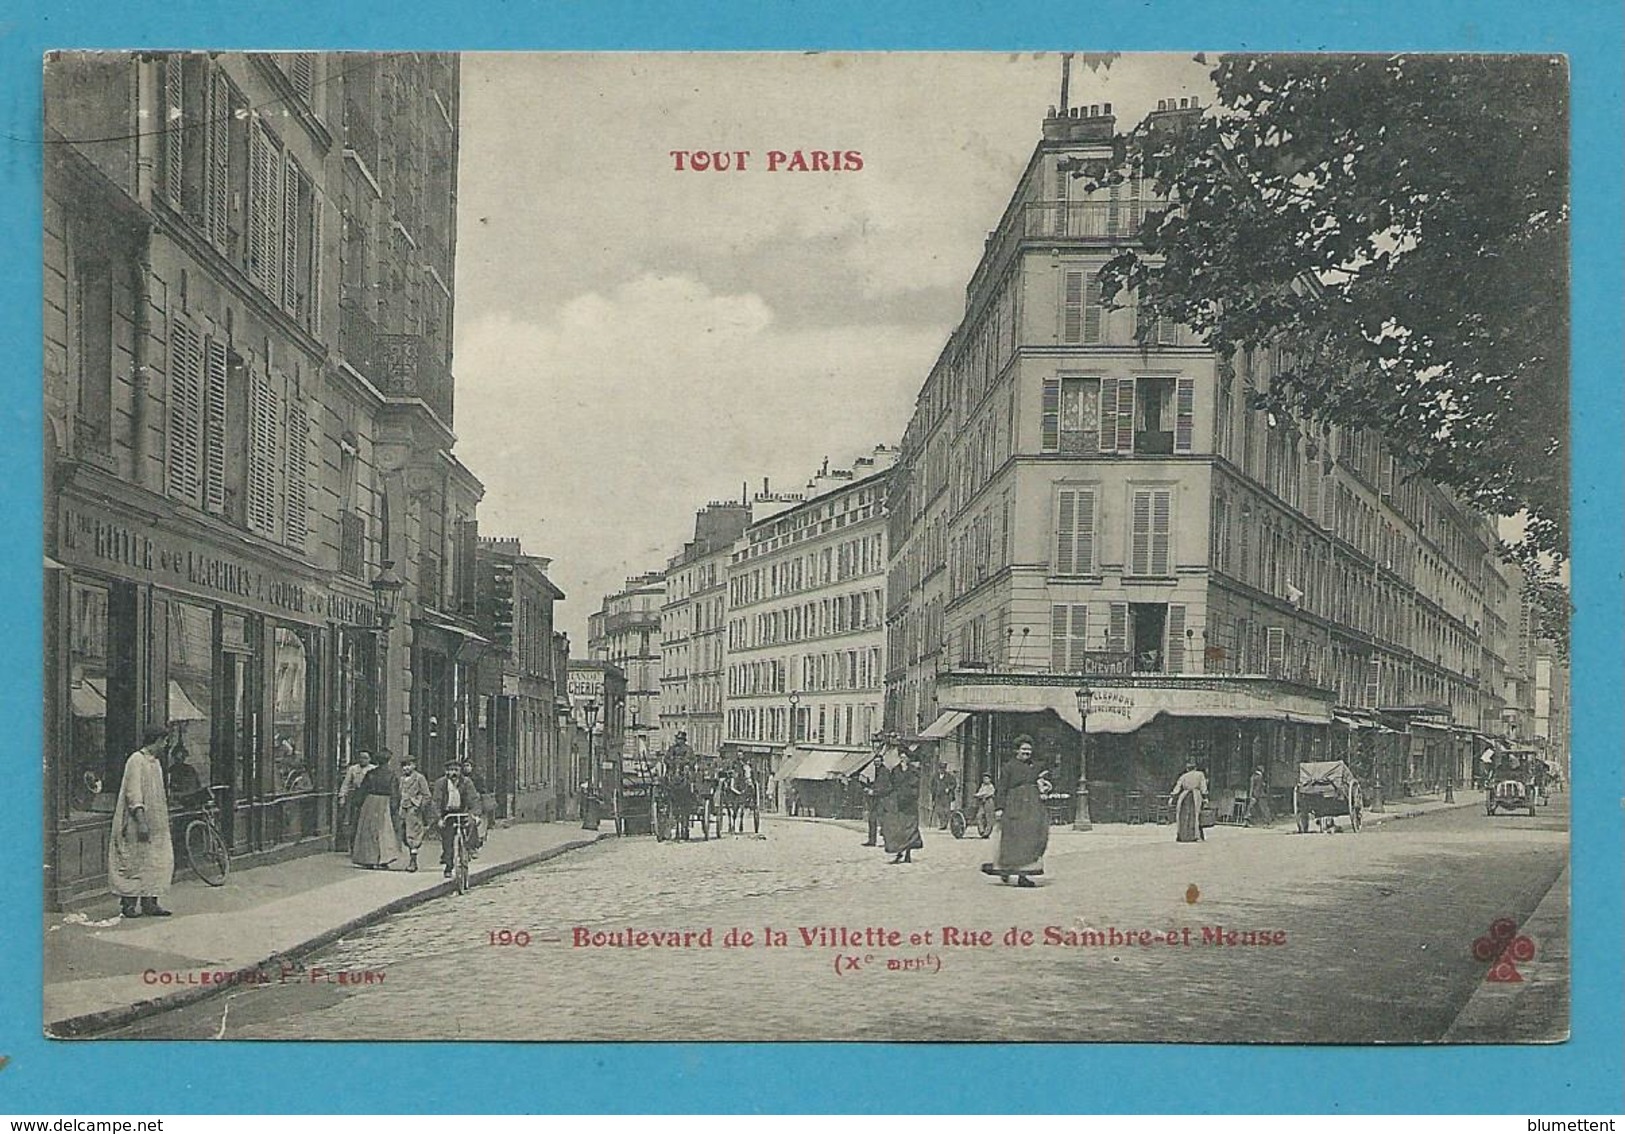 CPA TOUT PARIS 190 - Boulevard De La Villette Et Rue De Sambre-et-Meuse (Xème Arrt) Ed. FLEURY - District 20